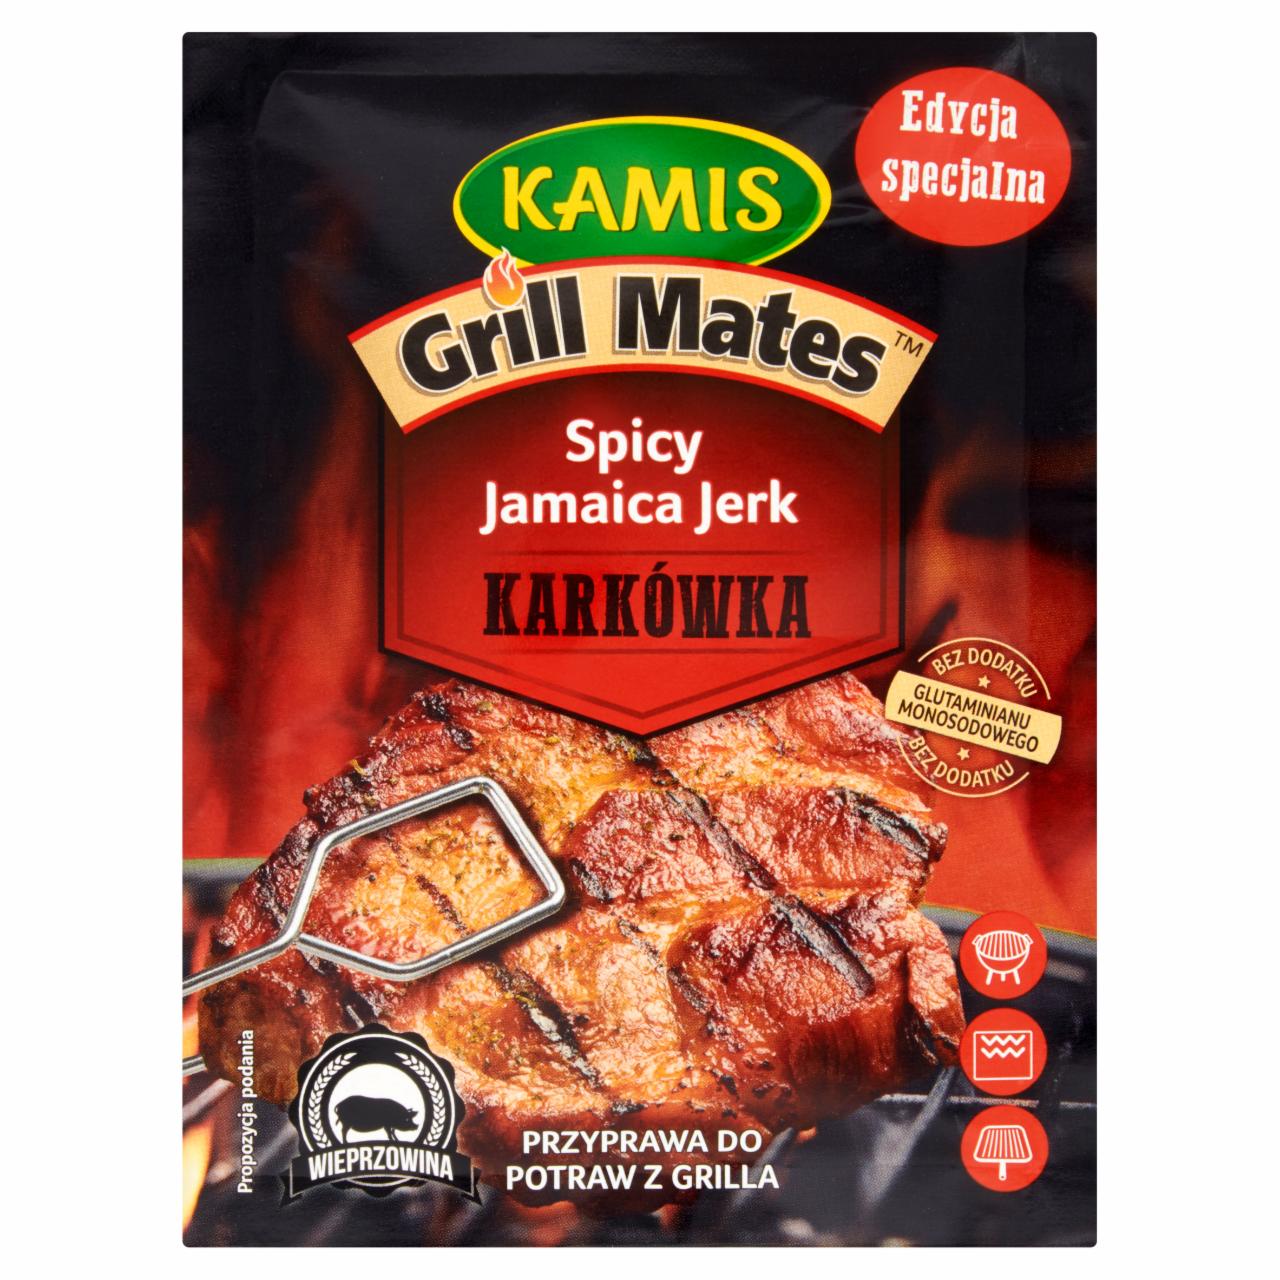 Zdjęcia - Kamis Grill Mates Karkówka Spicy Jamaica Jerk Przyprawa do potraw z grilla 20 g